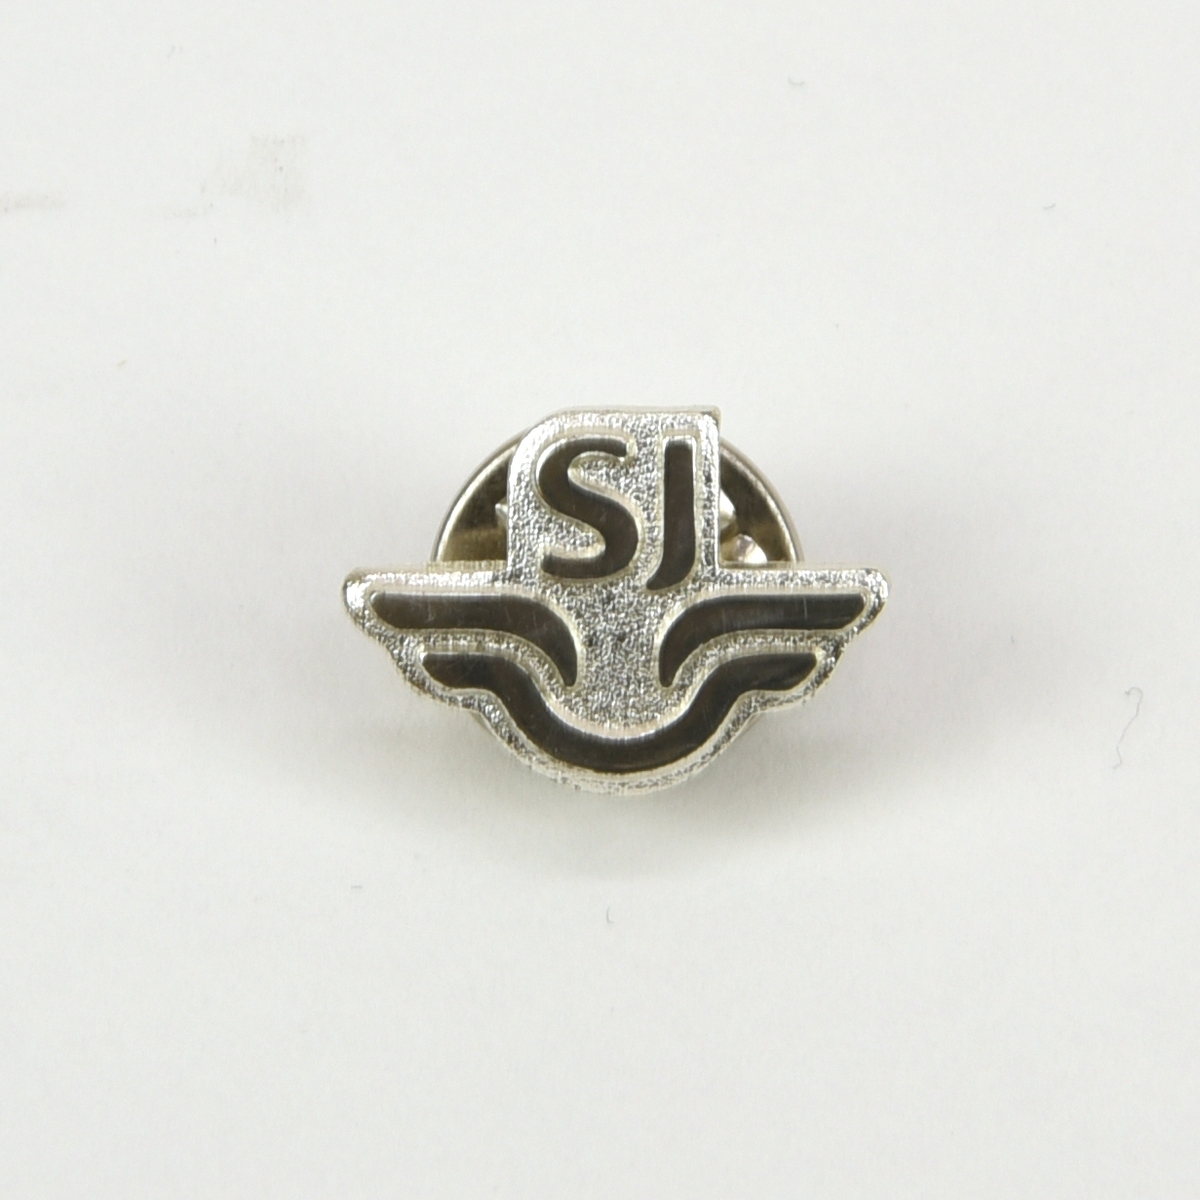 Liten metallnål med SJ:s logotyp i form av ett stiliserat vingpar med "SJ" ovanför. På baksidan finns en nål med ett runt lås.